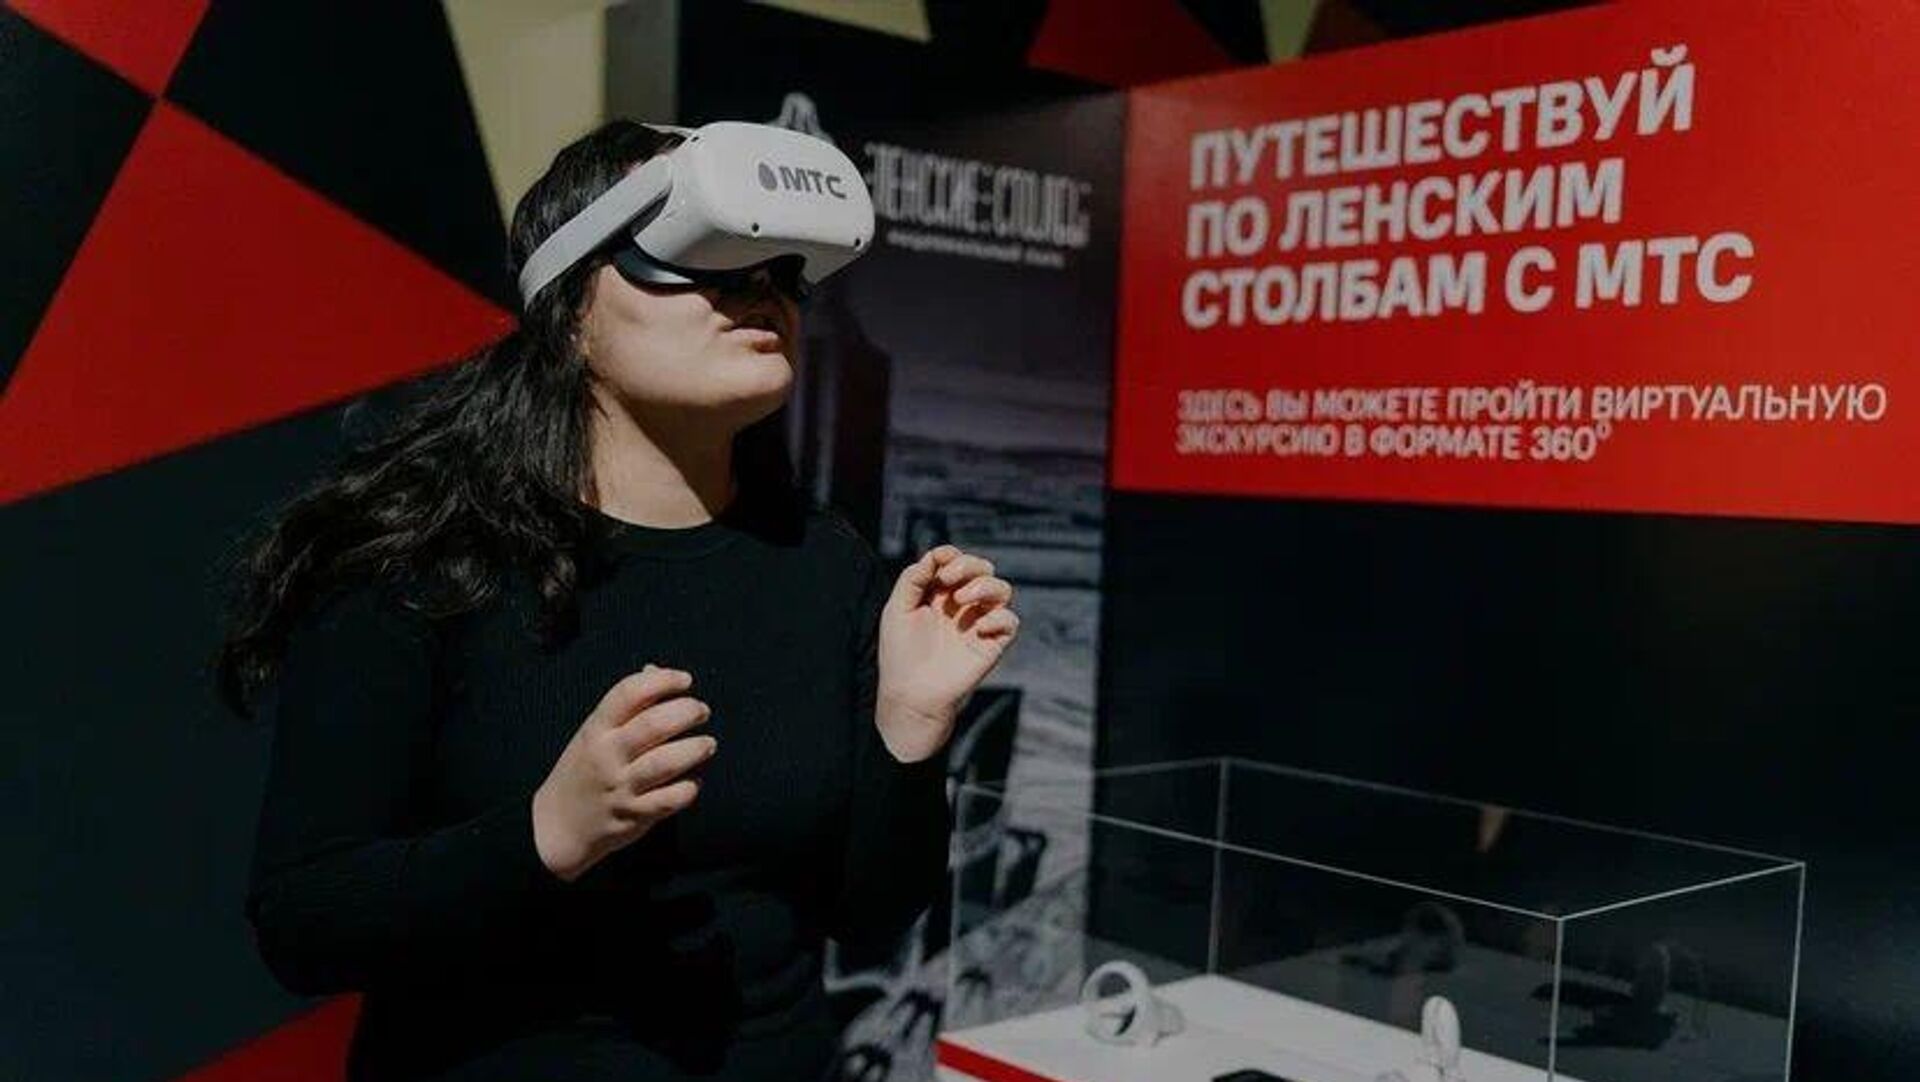 МТС запустила VR-тур по нацпарку "Ленские столбы" в Якутии